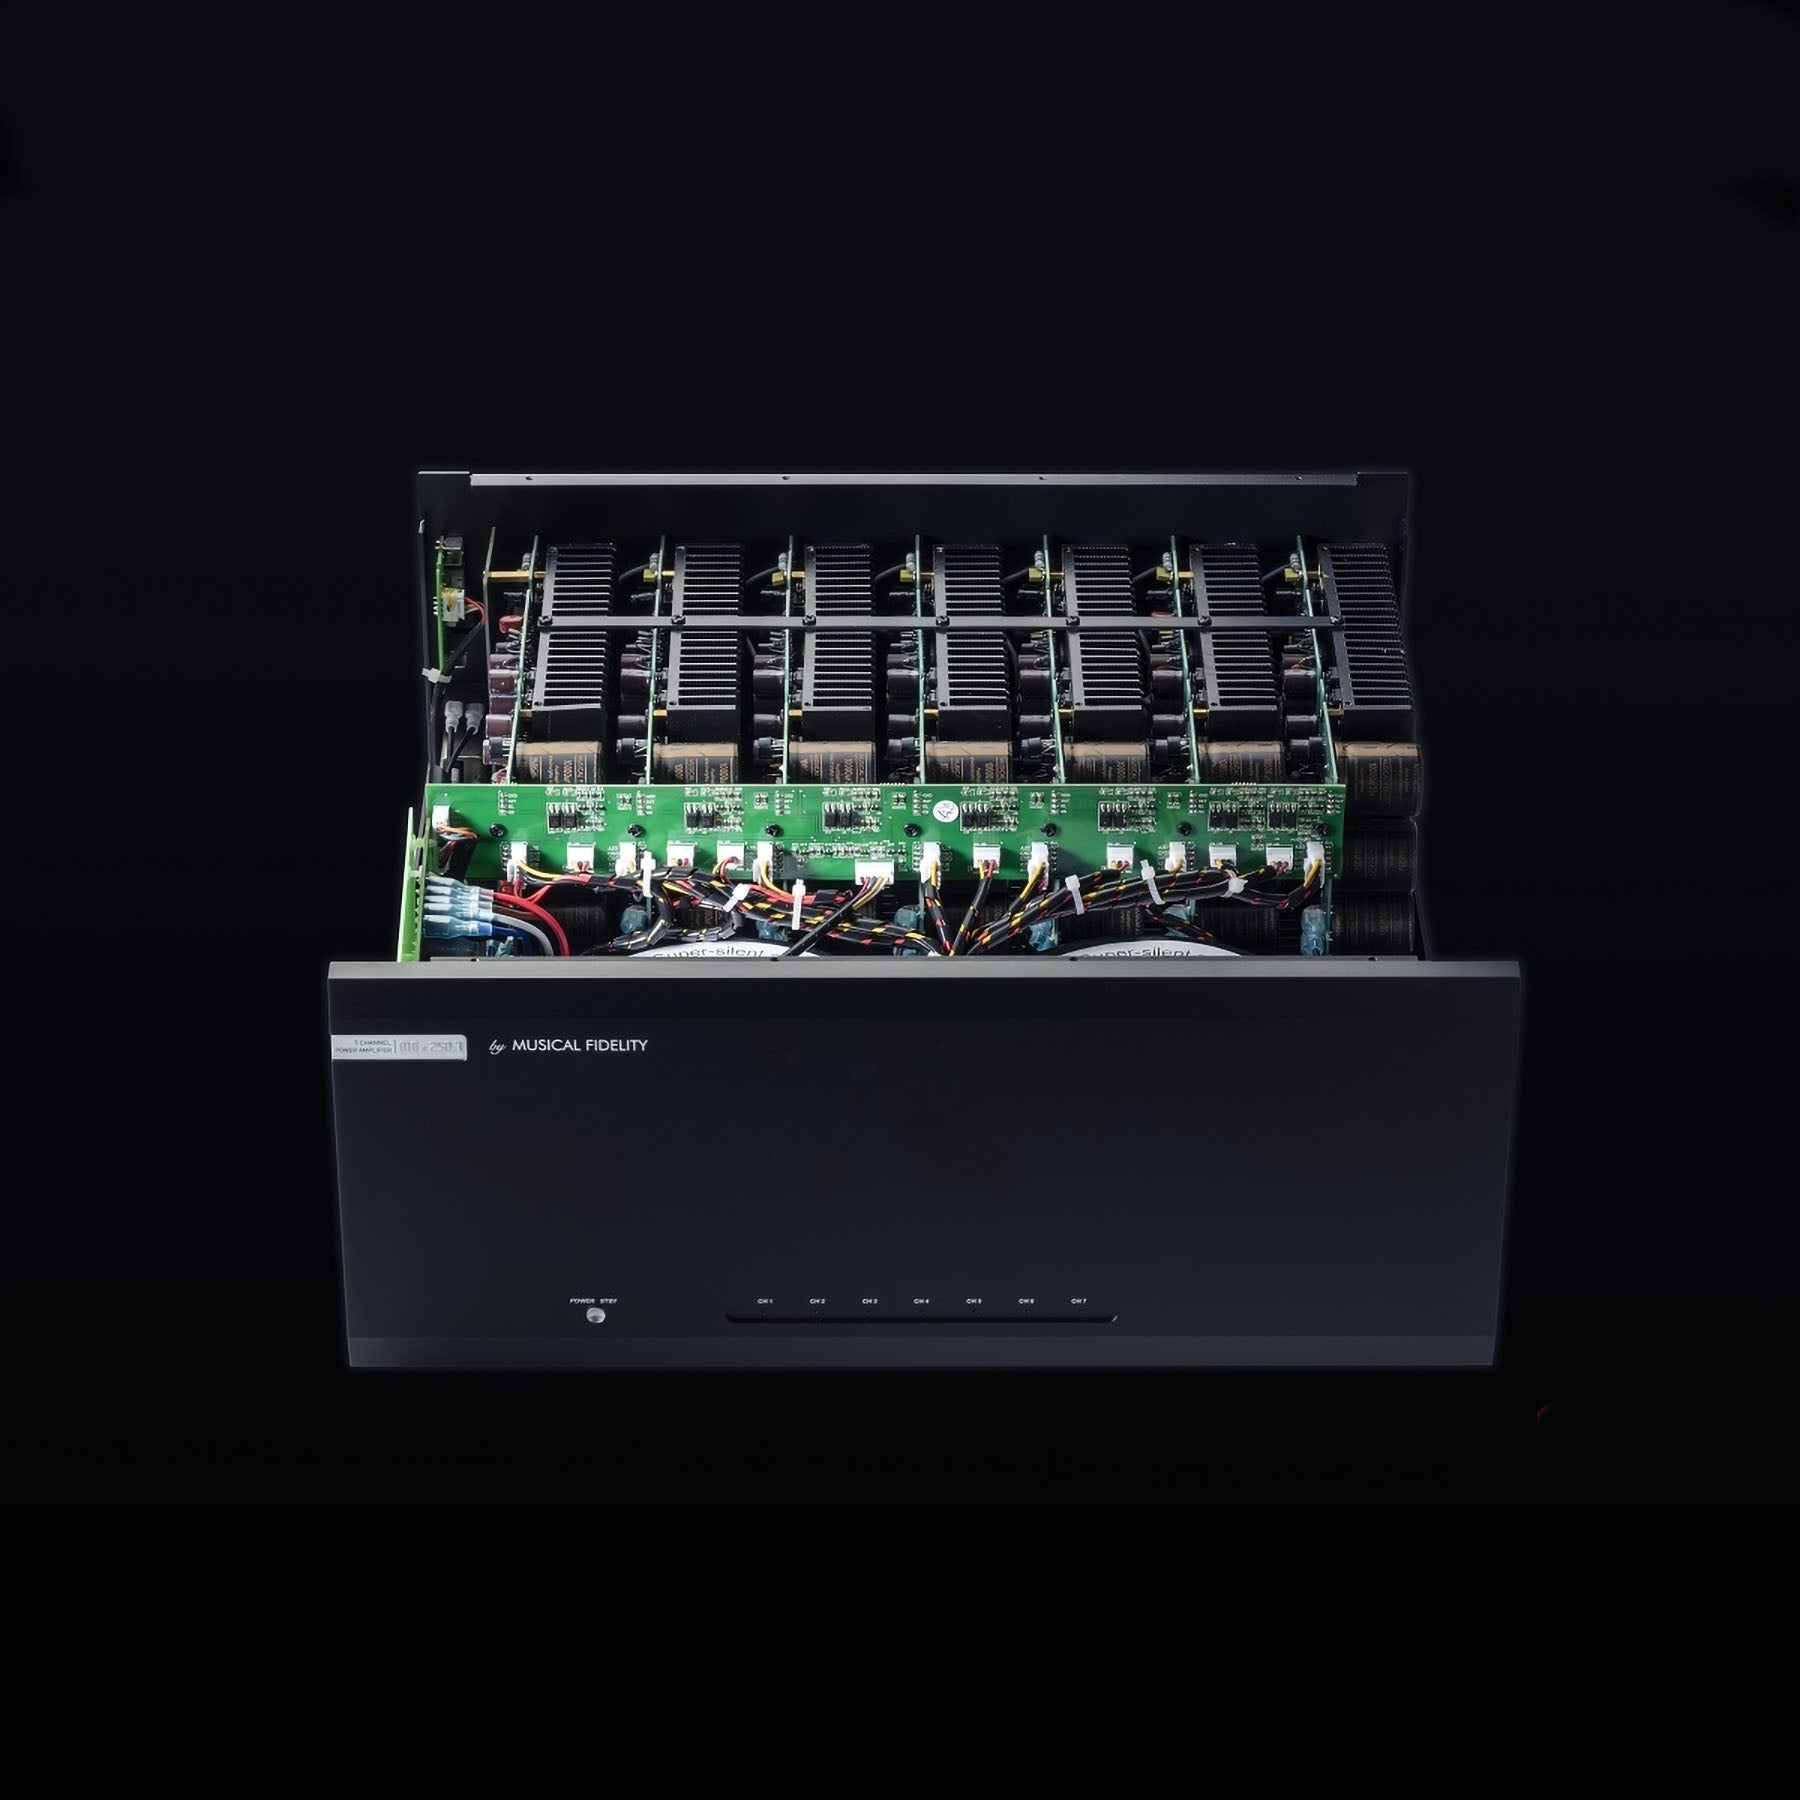 Musical Fidelity M6x 250.7 - 250.7 Watt Power Amplifier